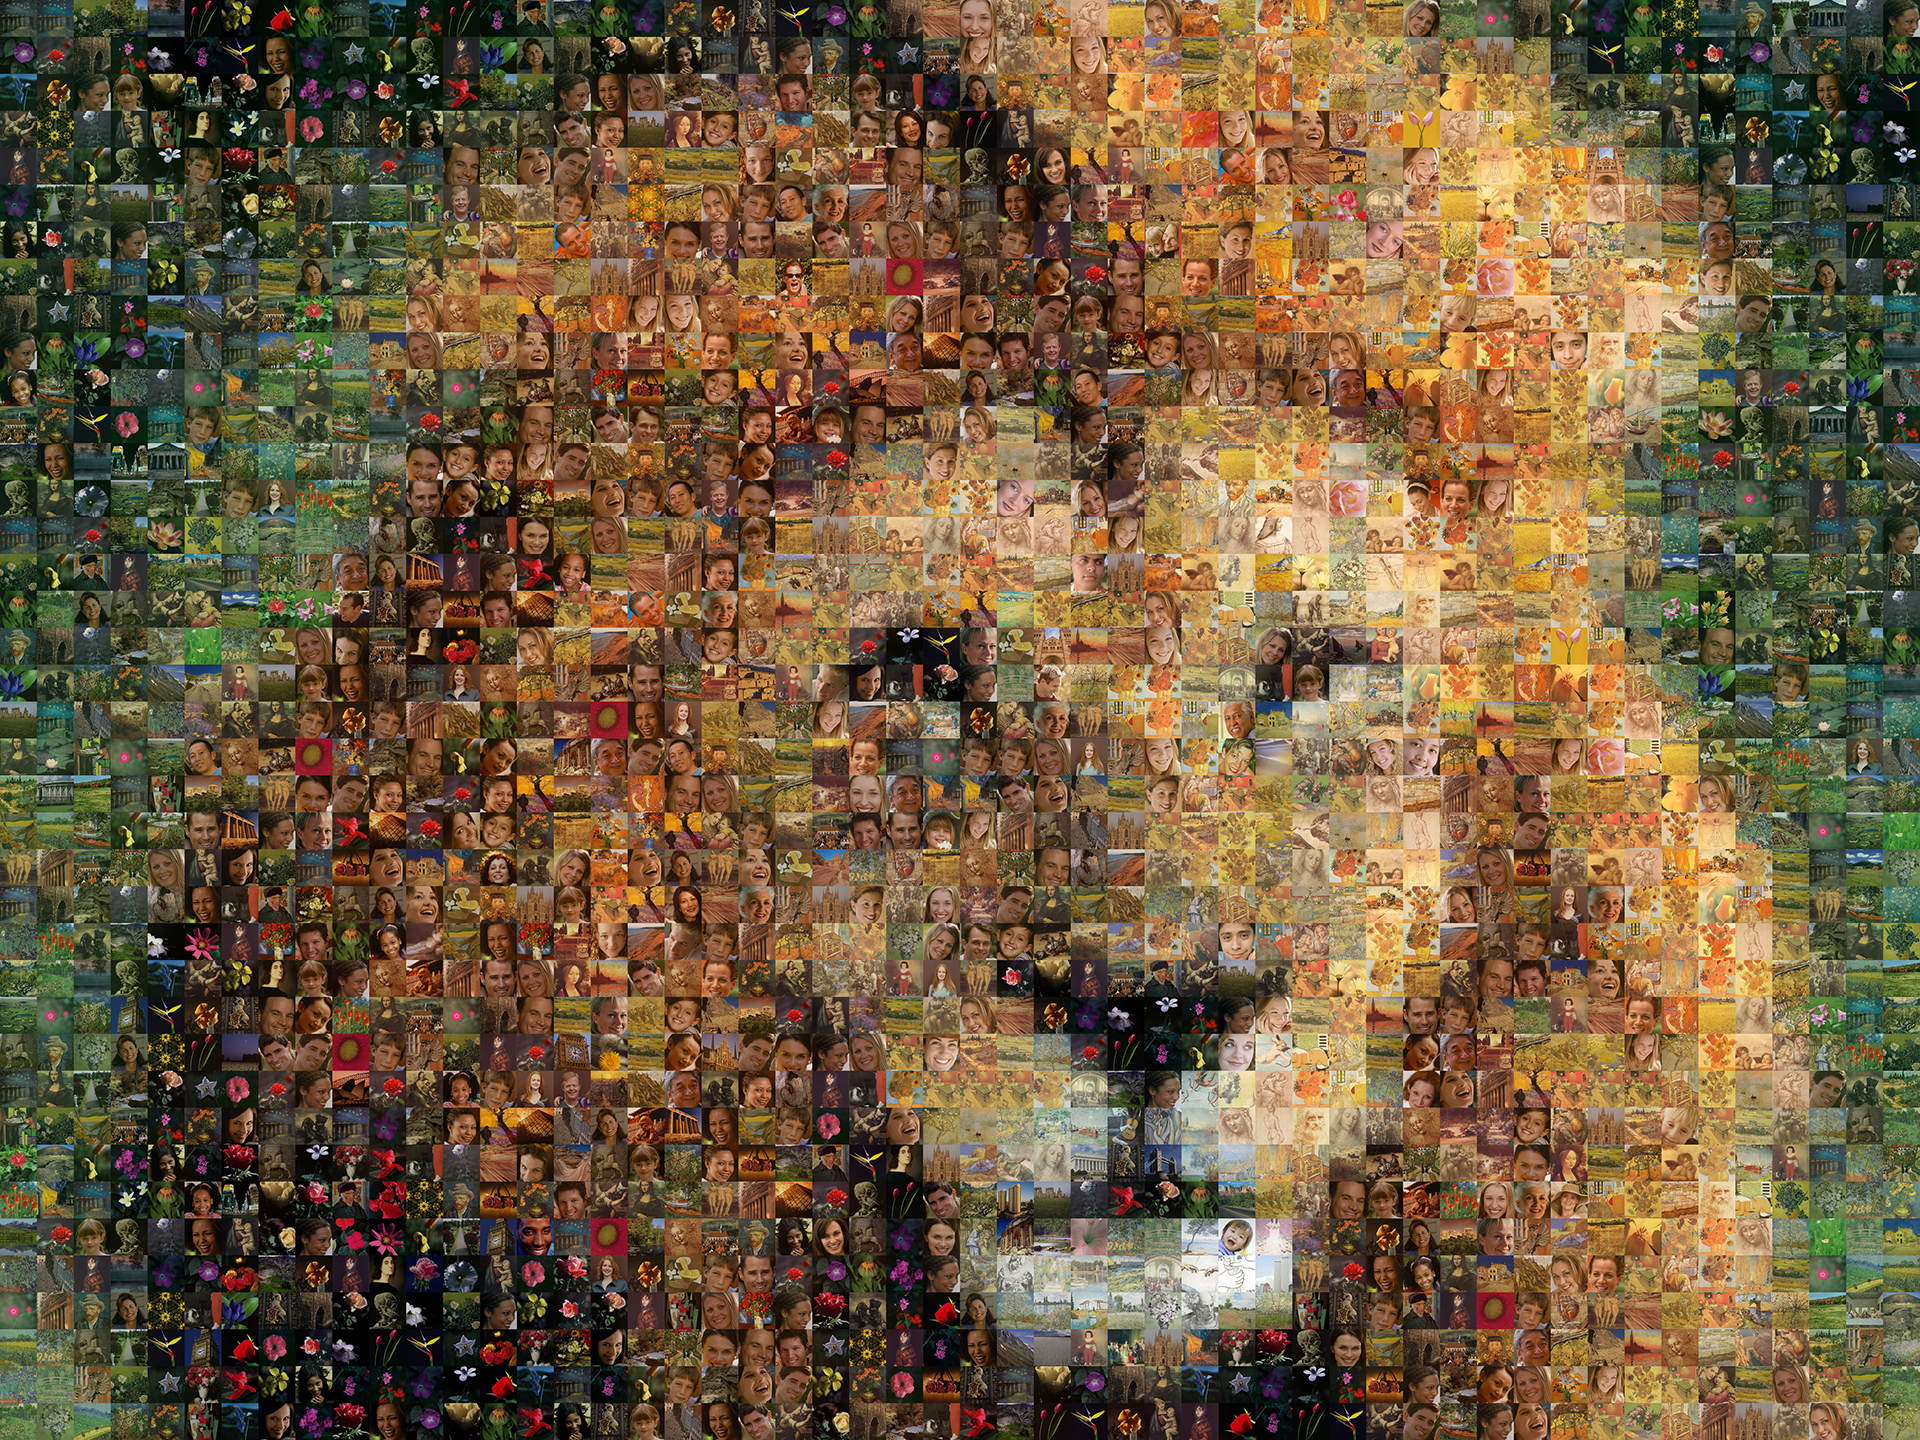 photo mosaic created using 930 random stock images